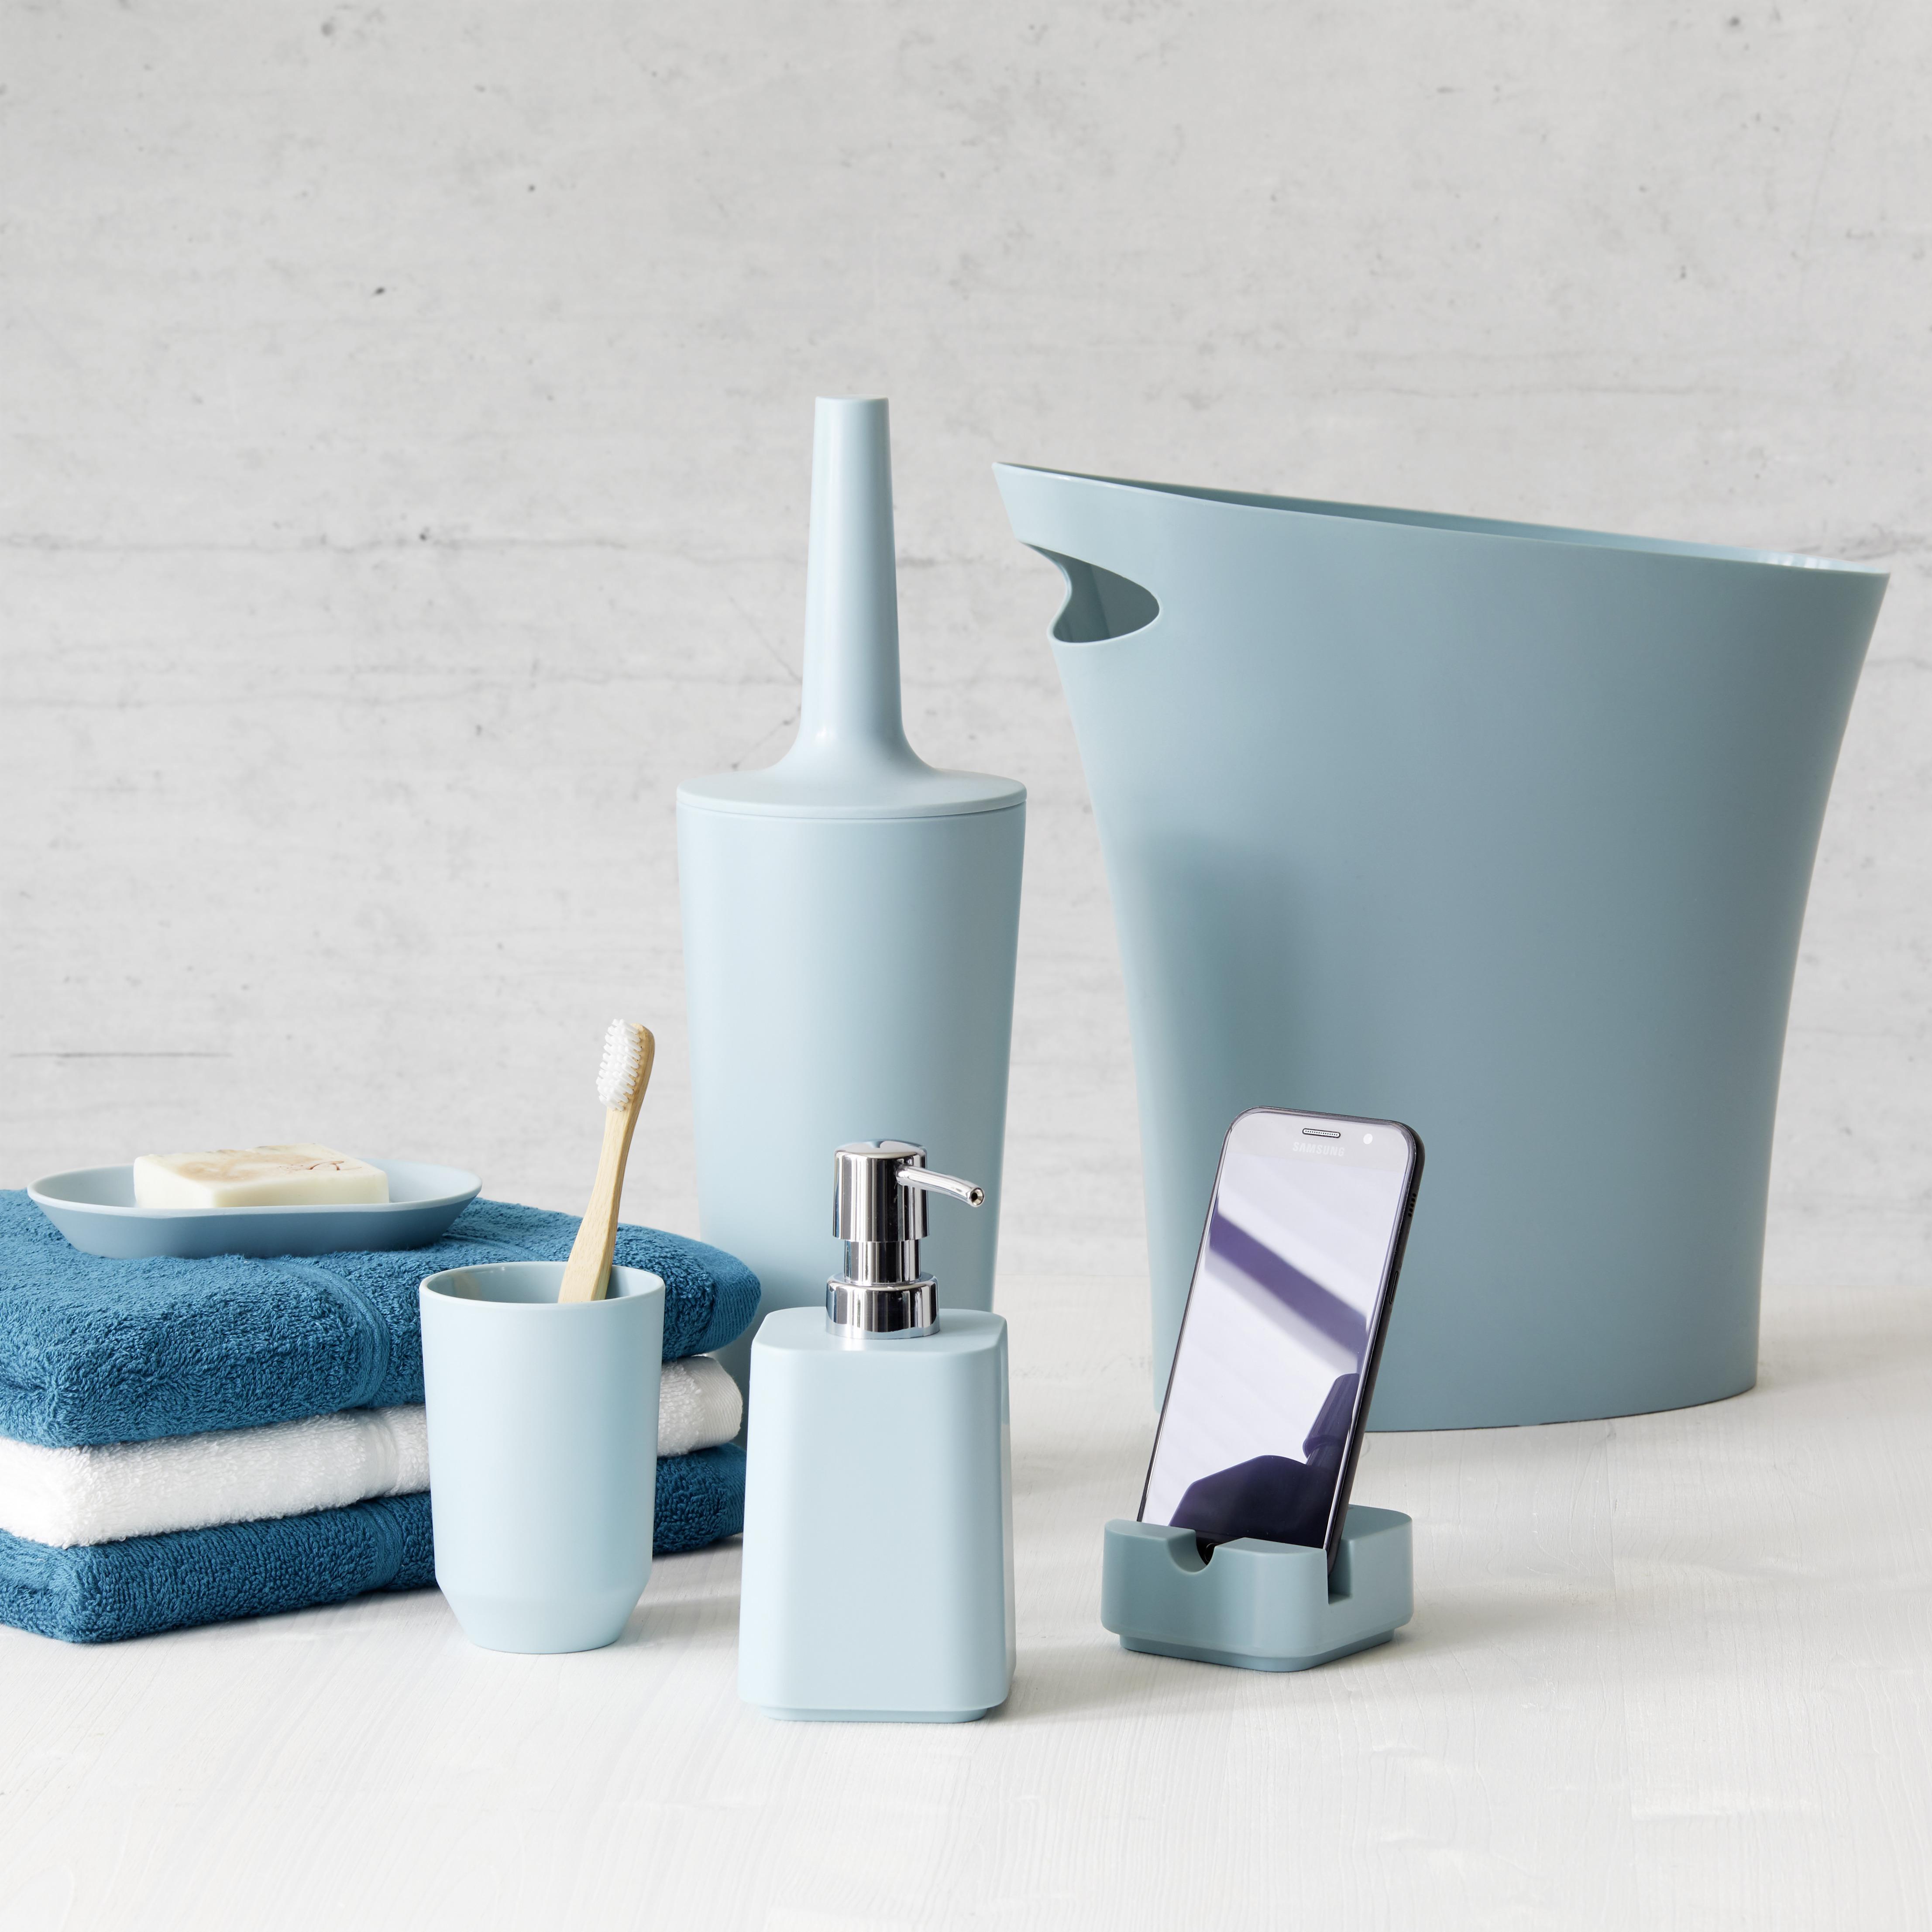 Kelímek Lilo - modrá, Moderní, plast (7,62/10,8cm) - Modern Living